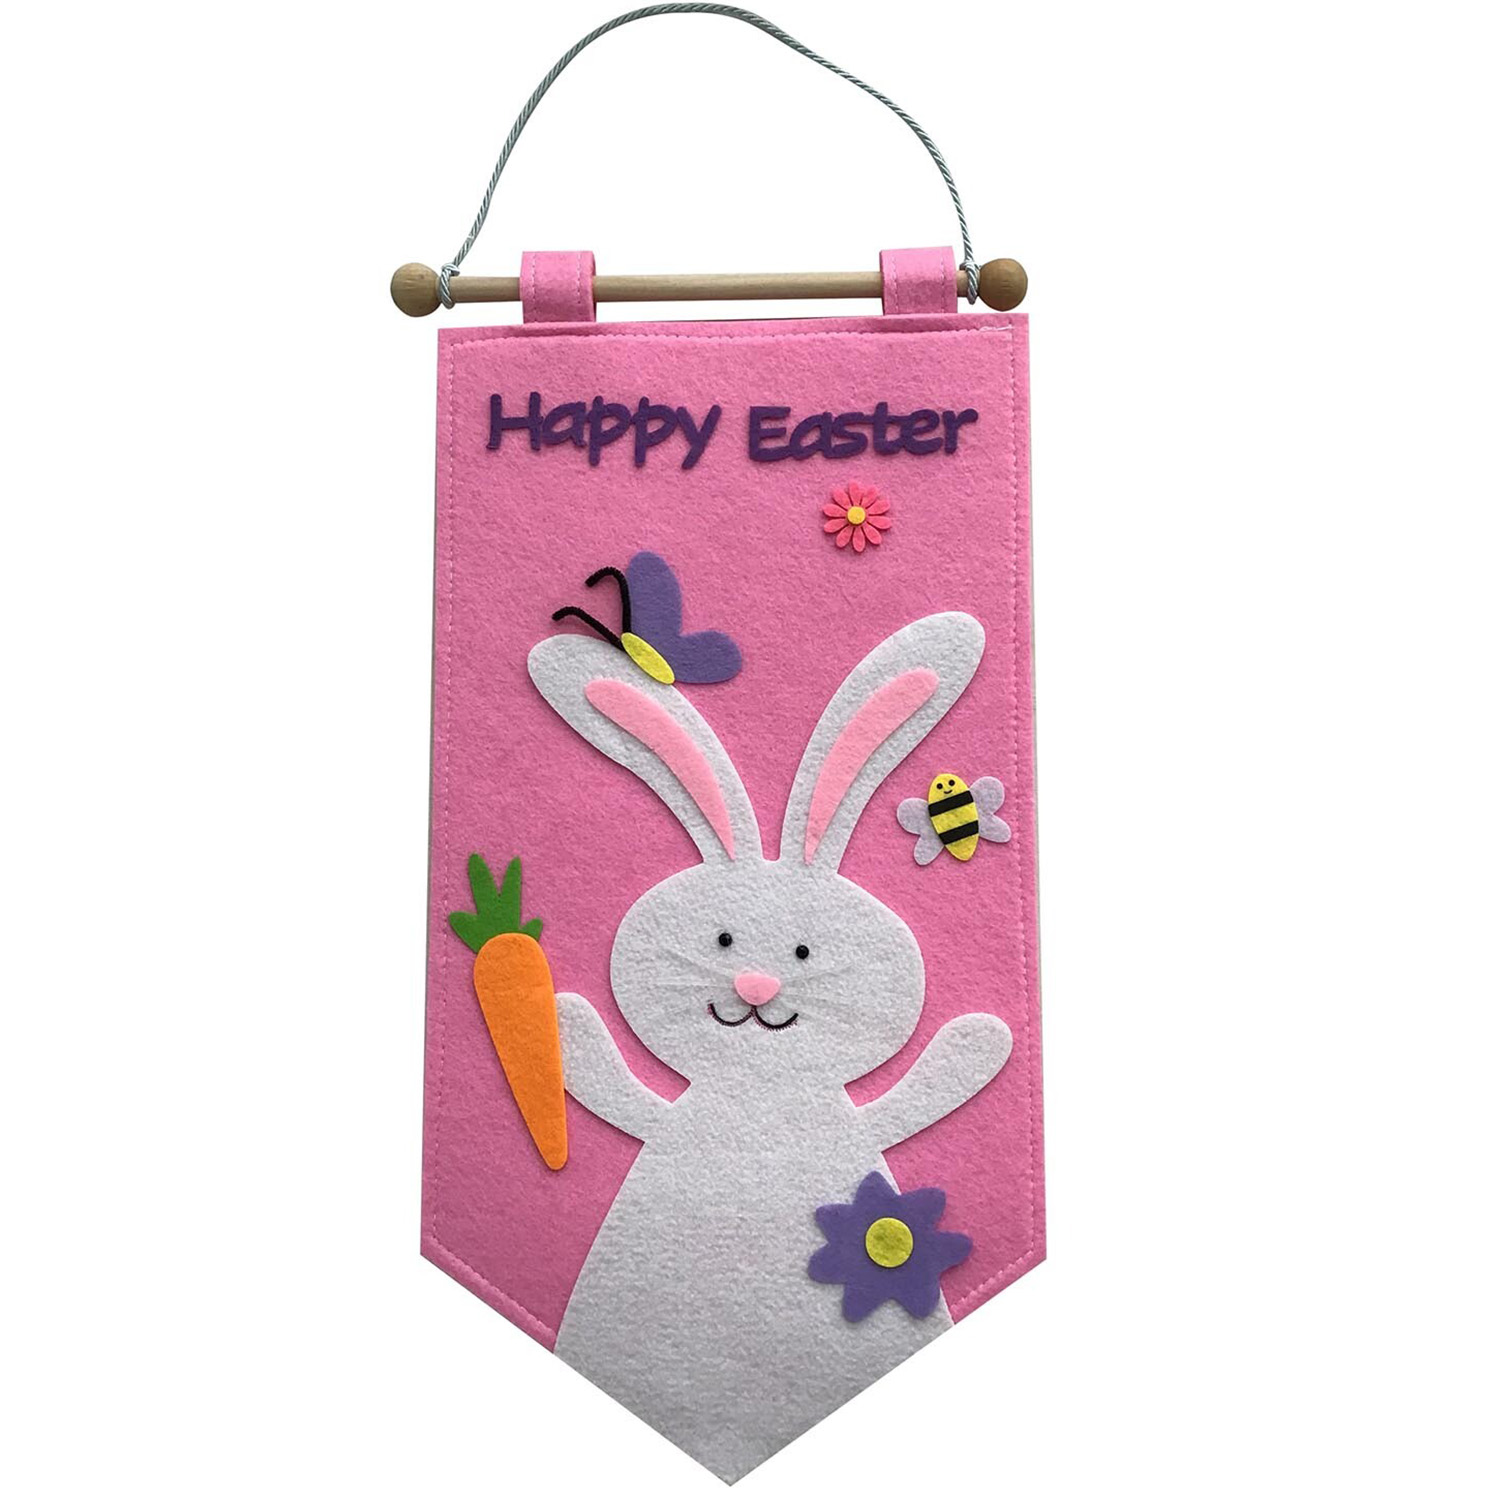 Hanging Felt Easter Banner Image 1